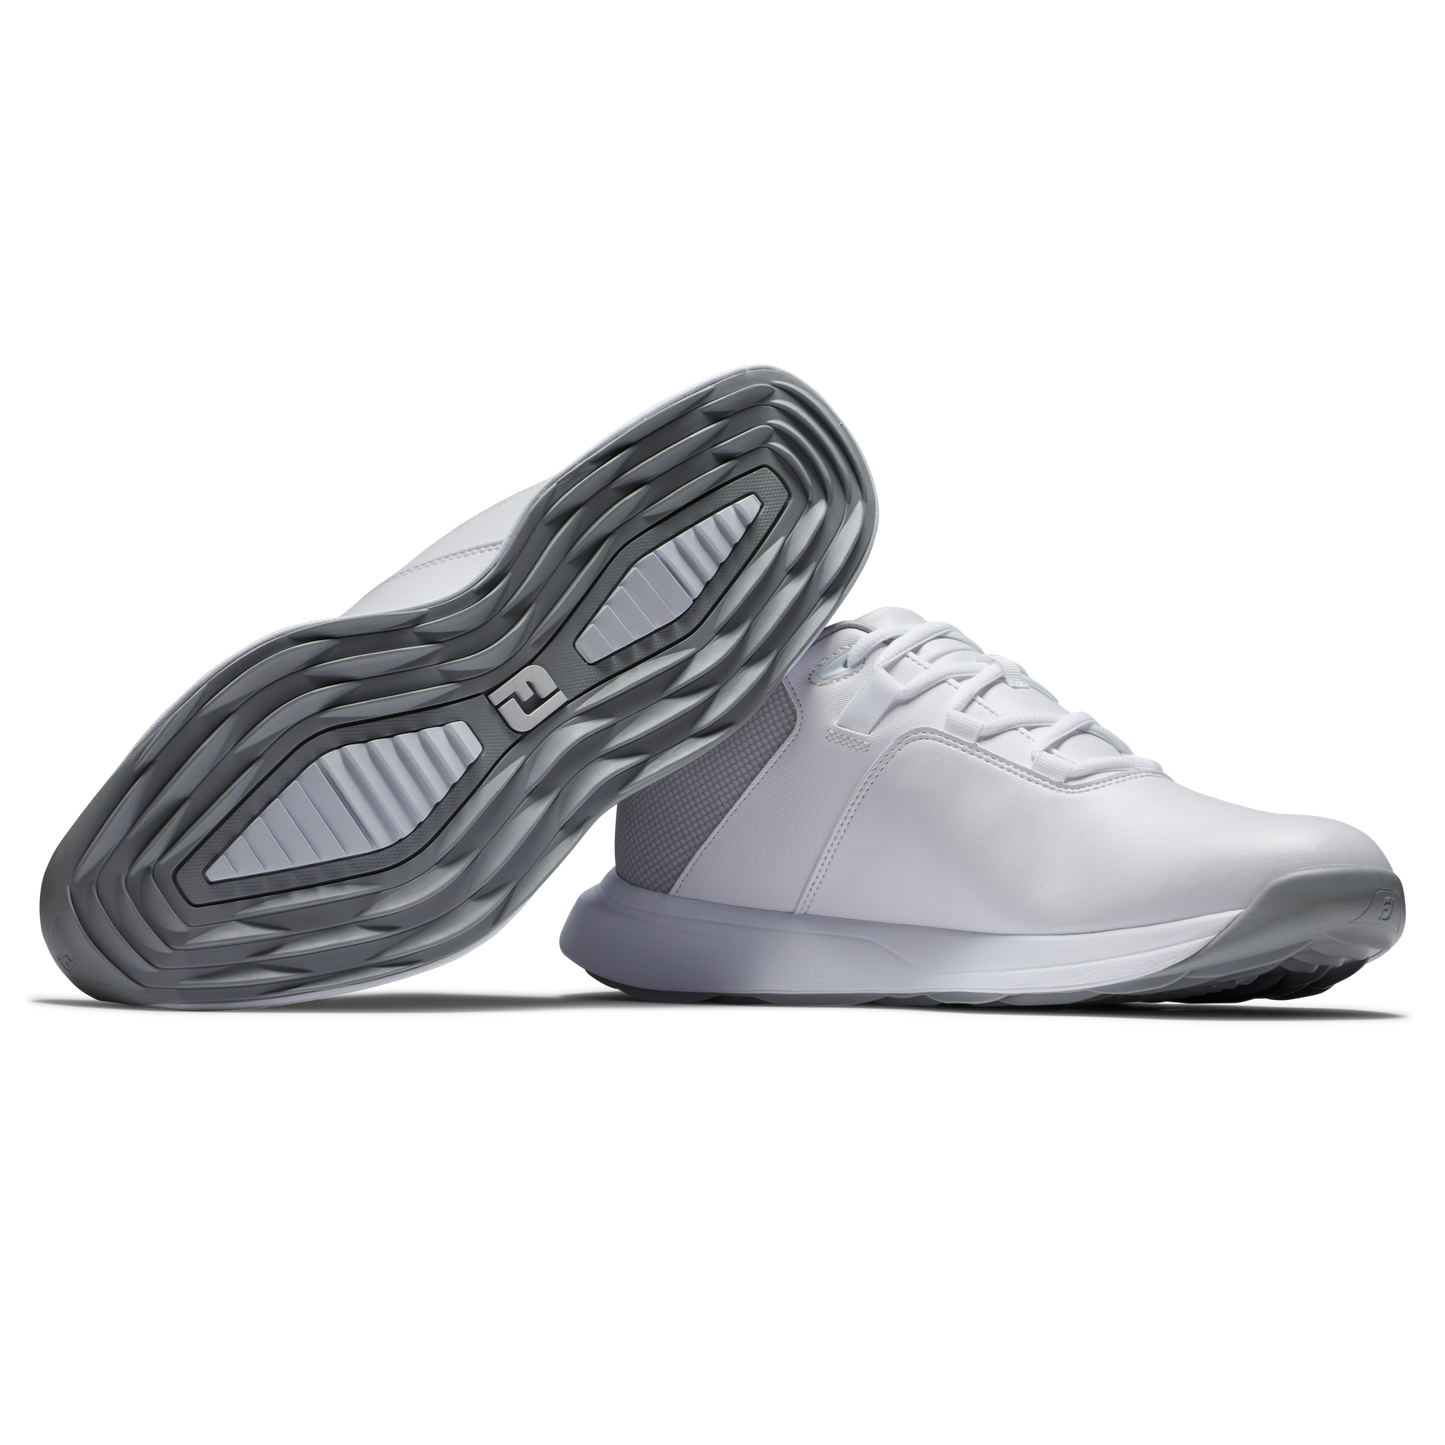 New - Footjoy Men`s Prolite Golf Shoes White / Grey